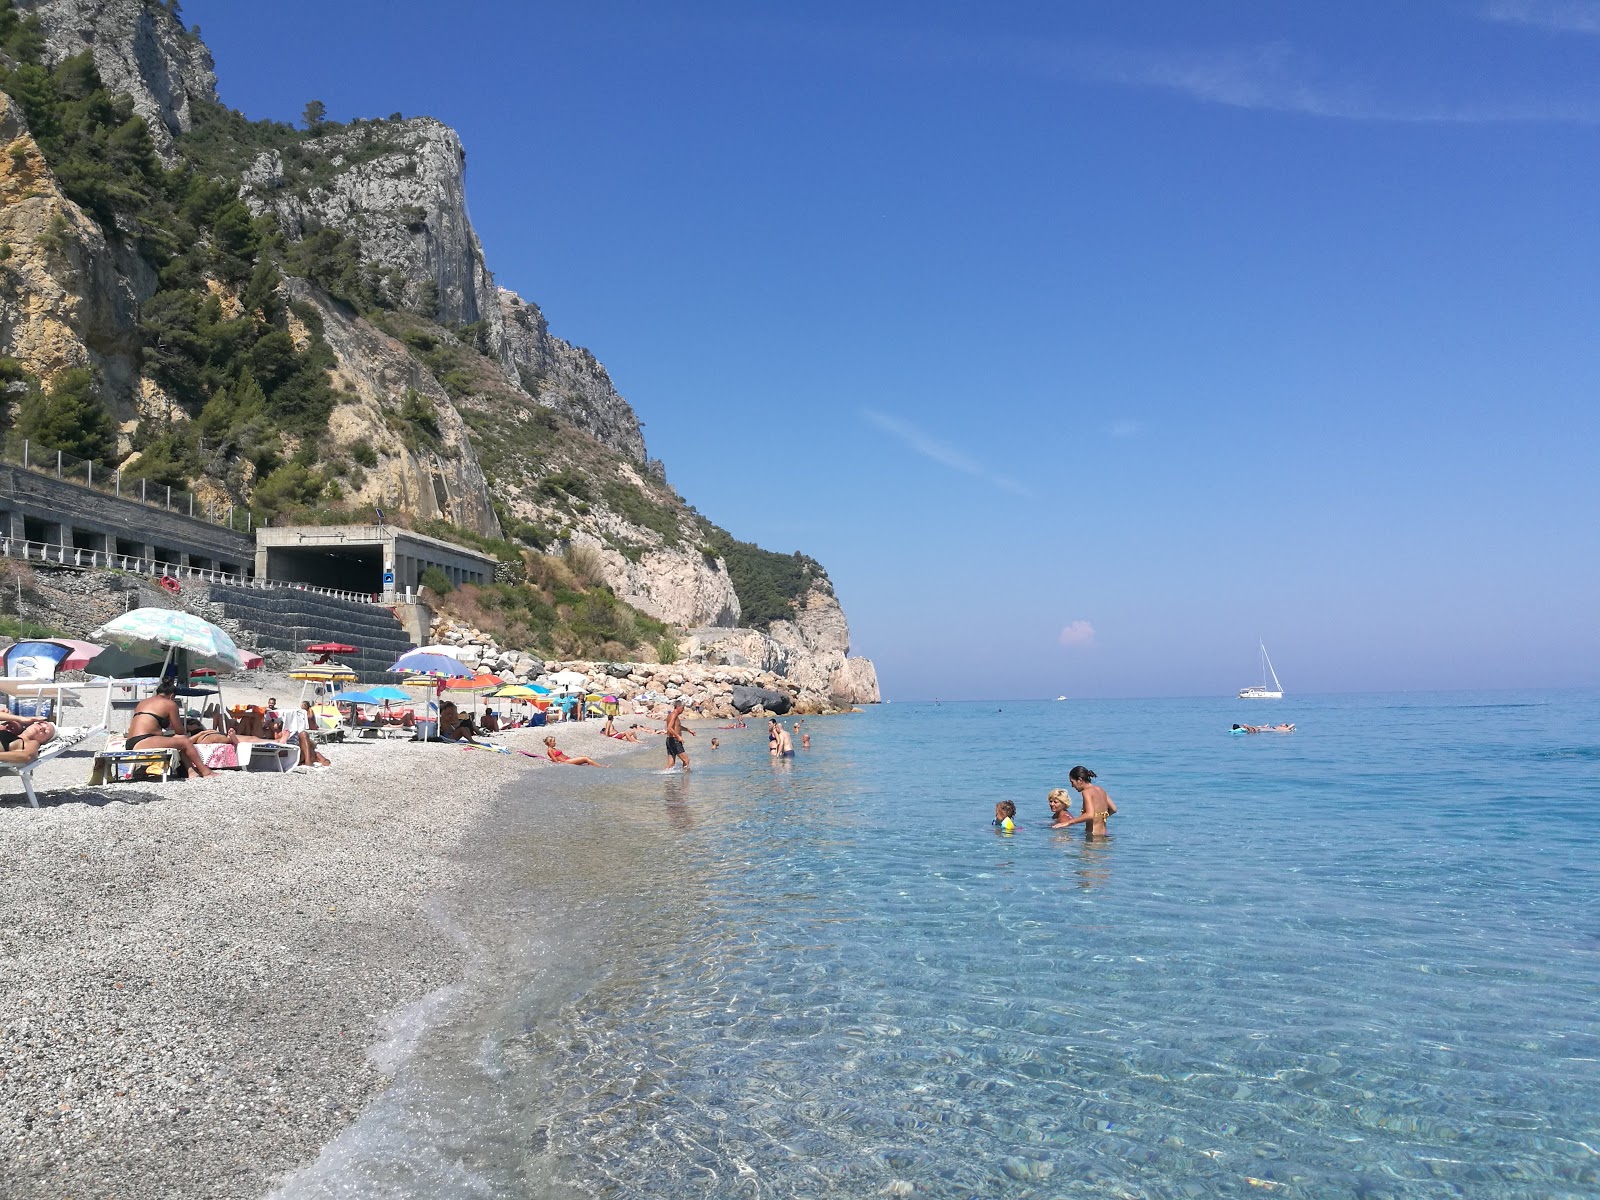 Spiaggia del Malpasso'in fotoğrafı koyu i̇nce çakıl yüzey ile